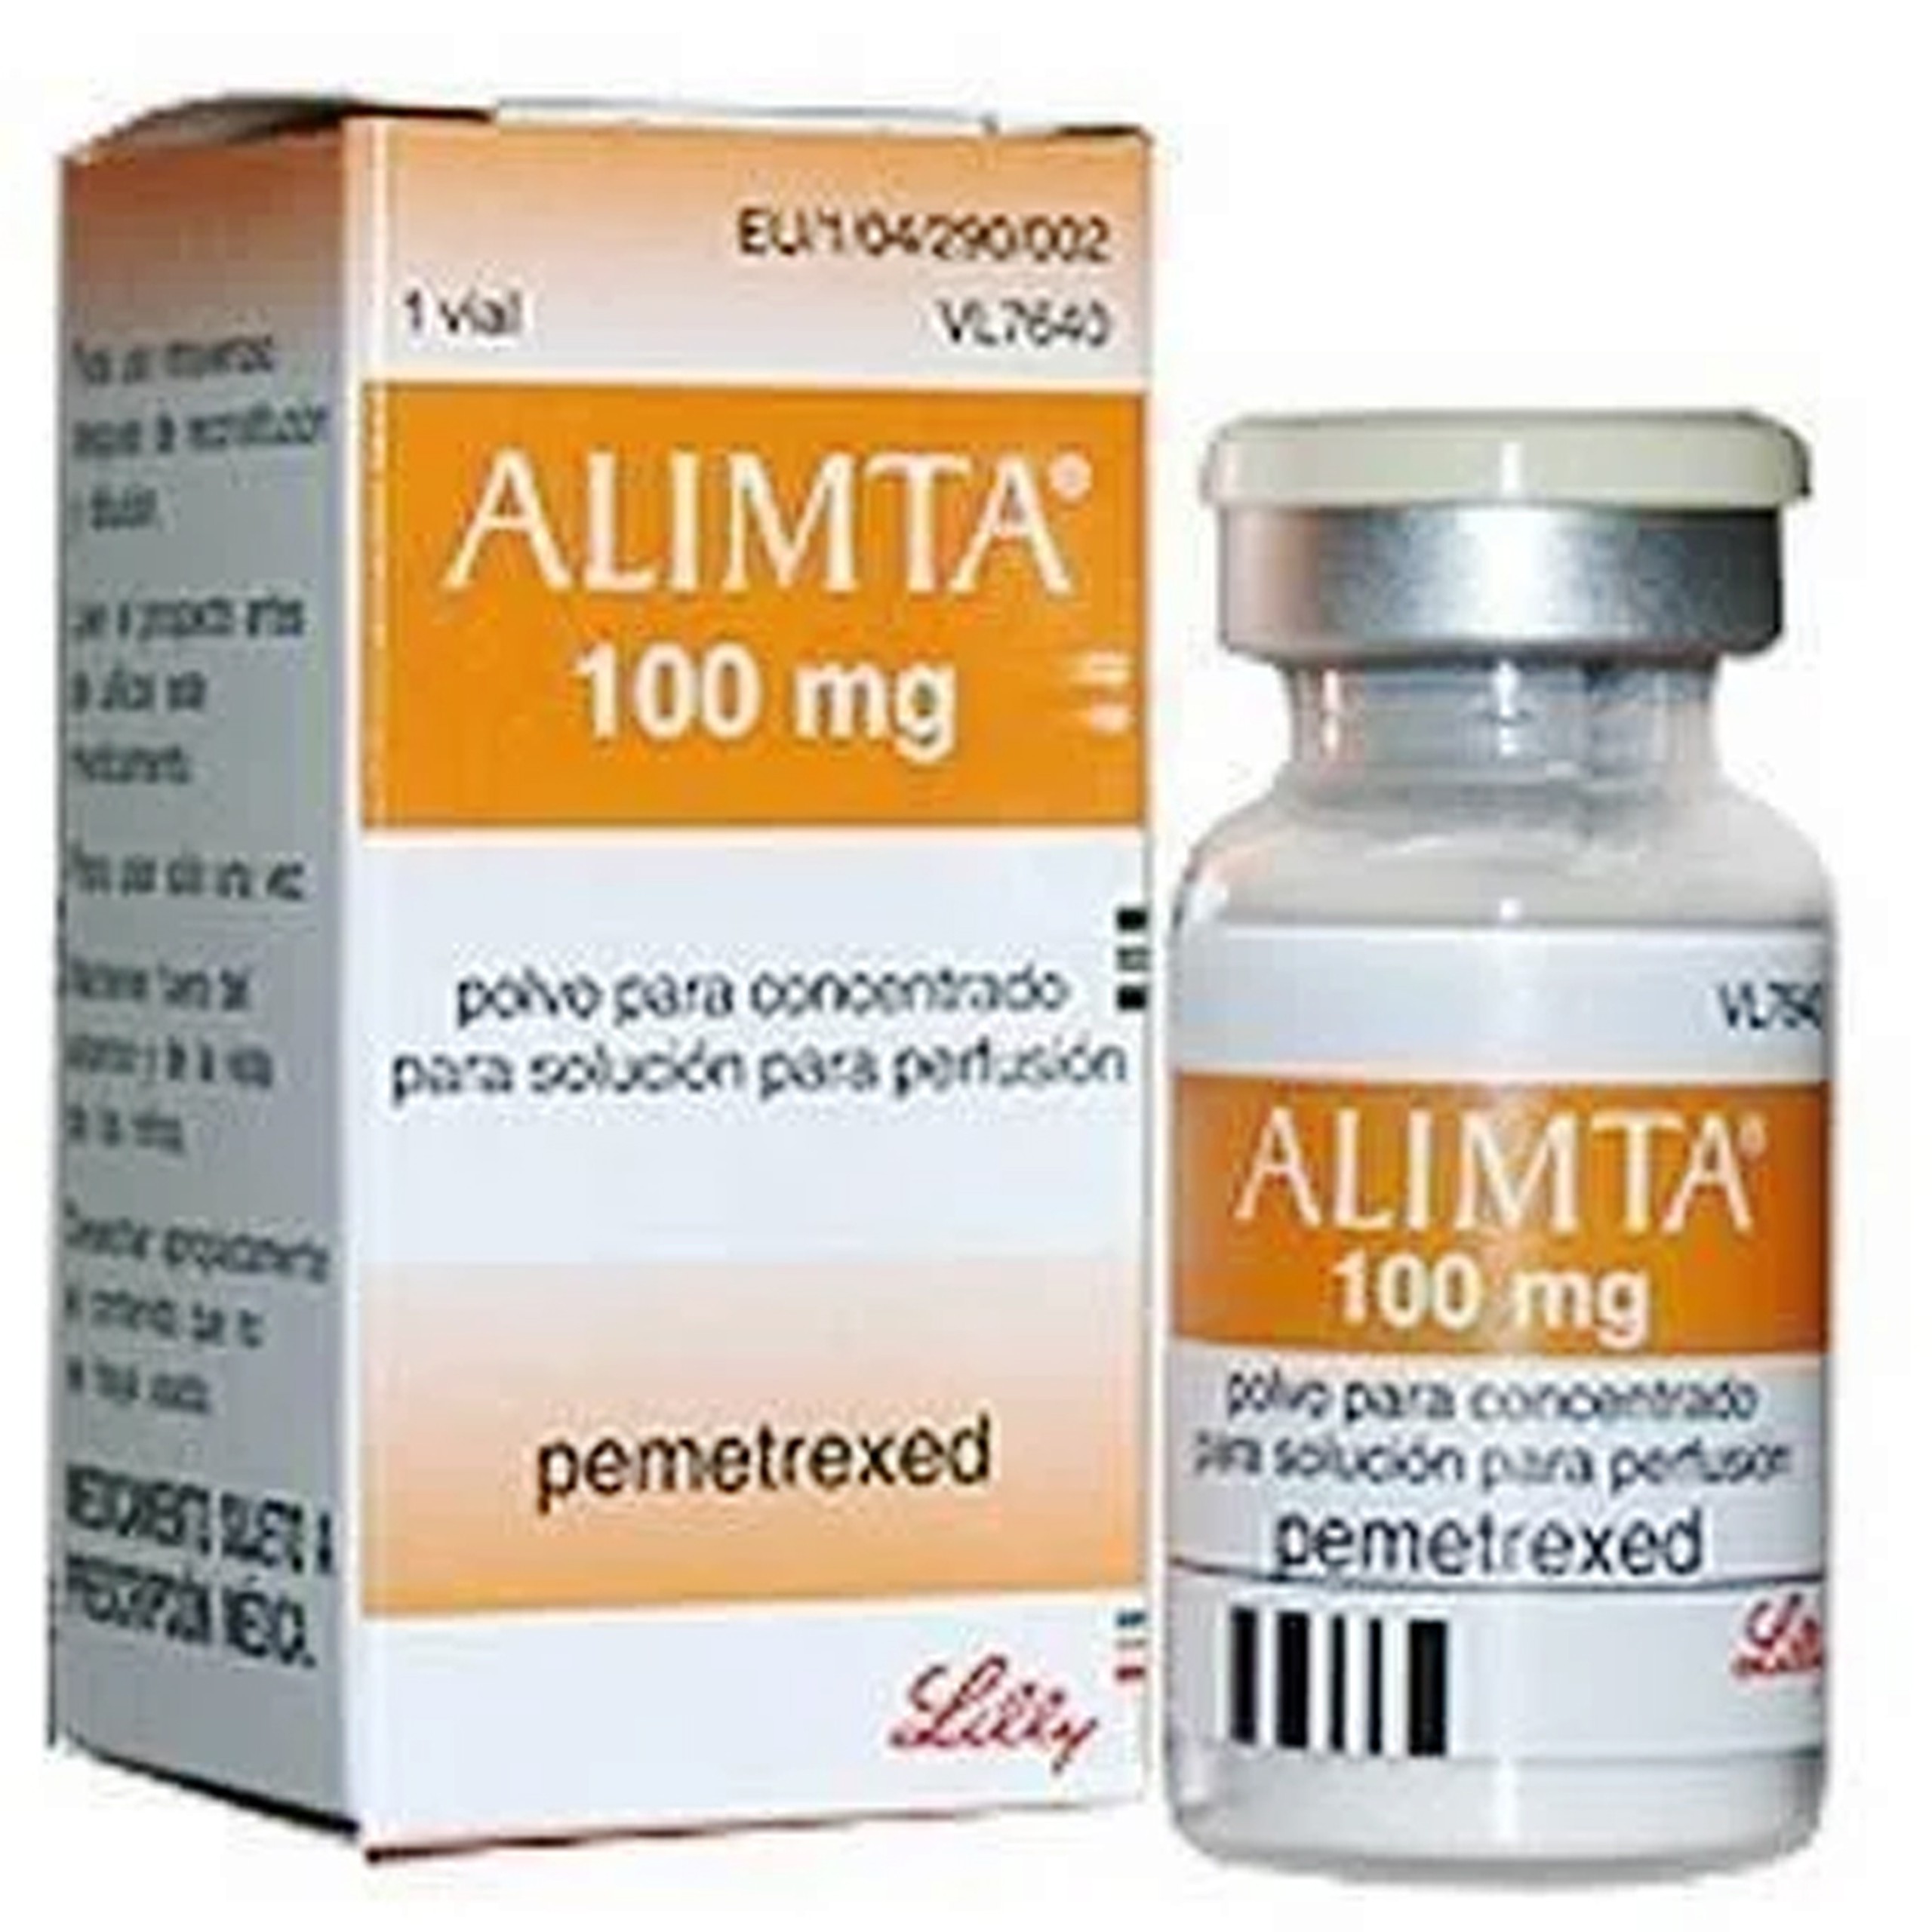 Thuốc Alimta 100mg Eli Lilly điều trị ung thư phổi, u trung biểu mô màng phổi ác tính